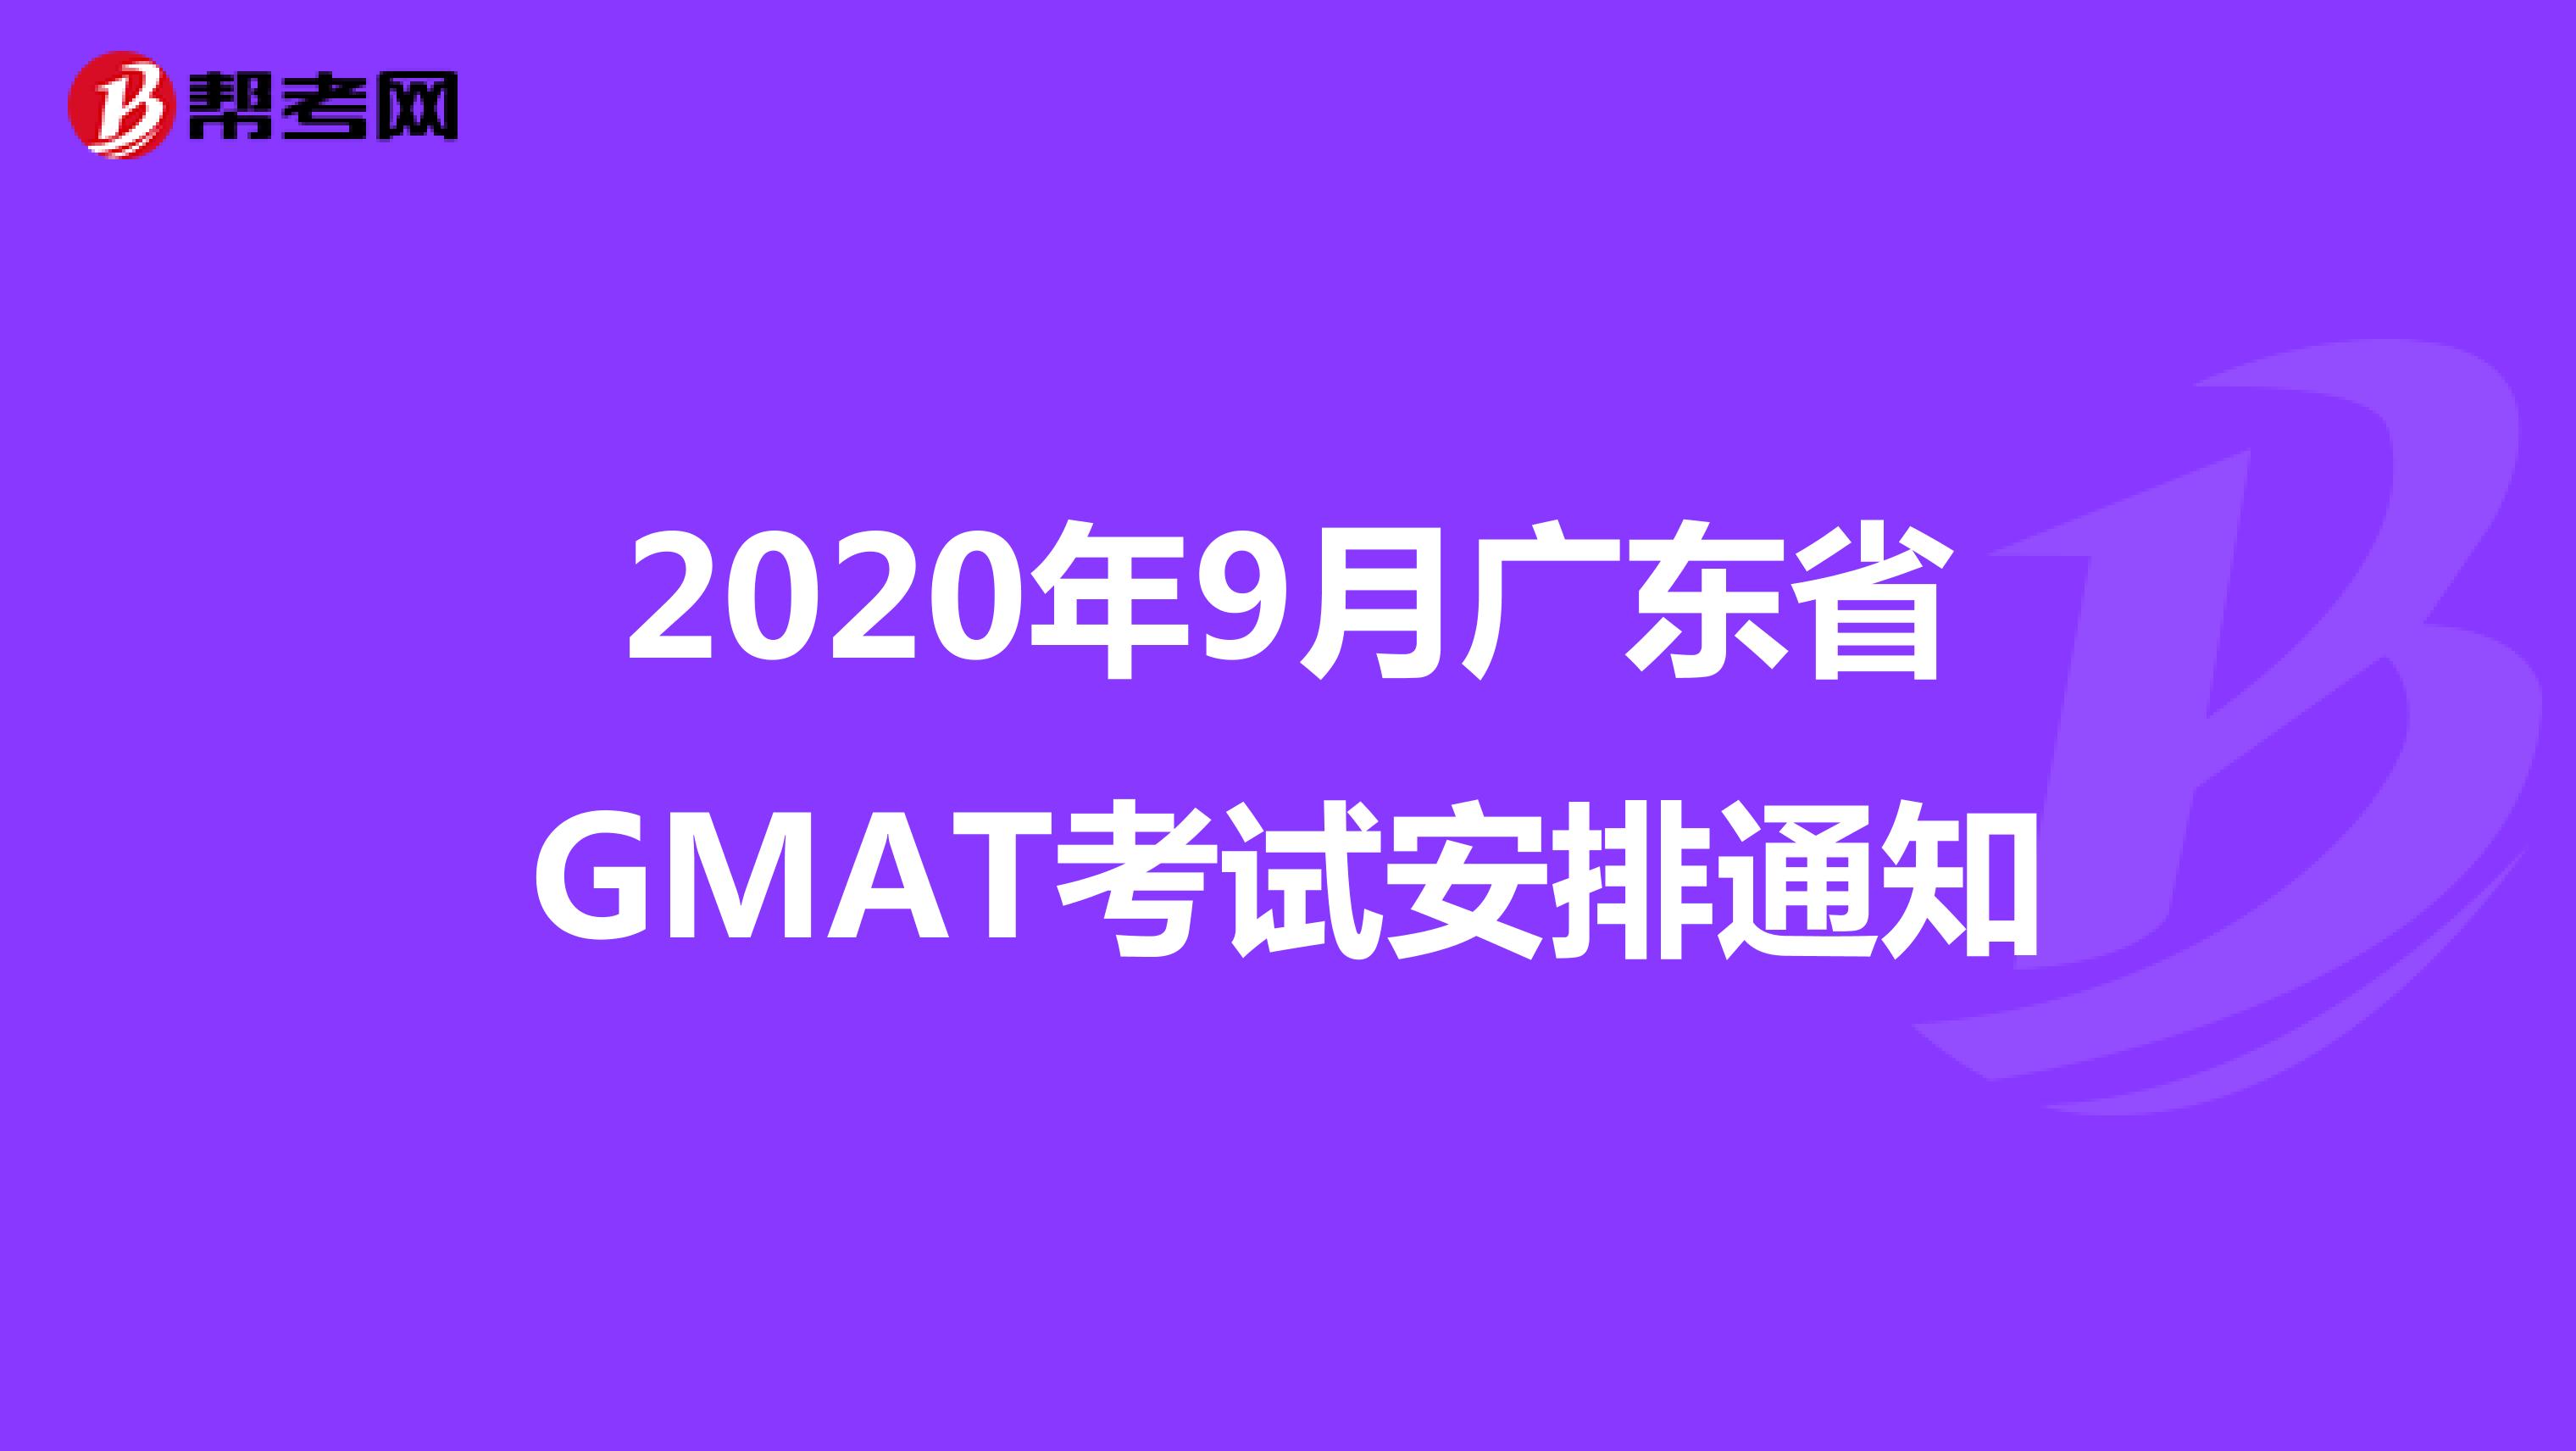 2020年9月广东省GMAT考试安排通知